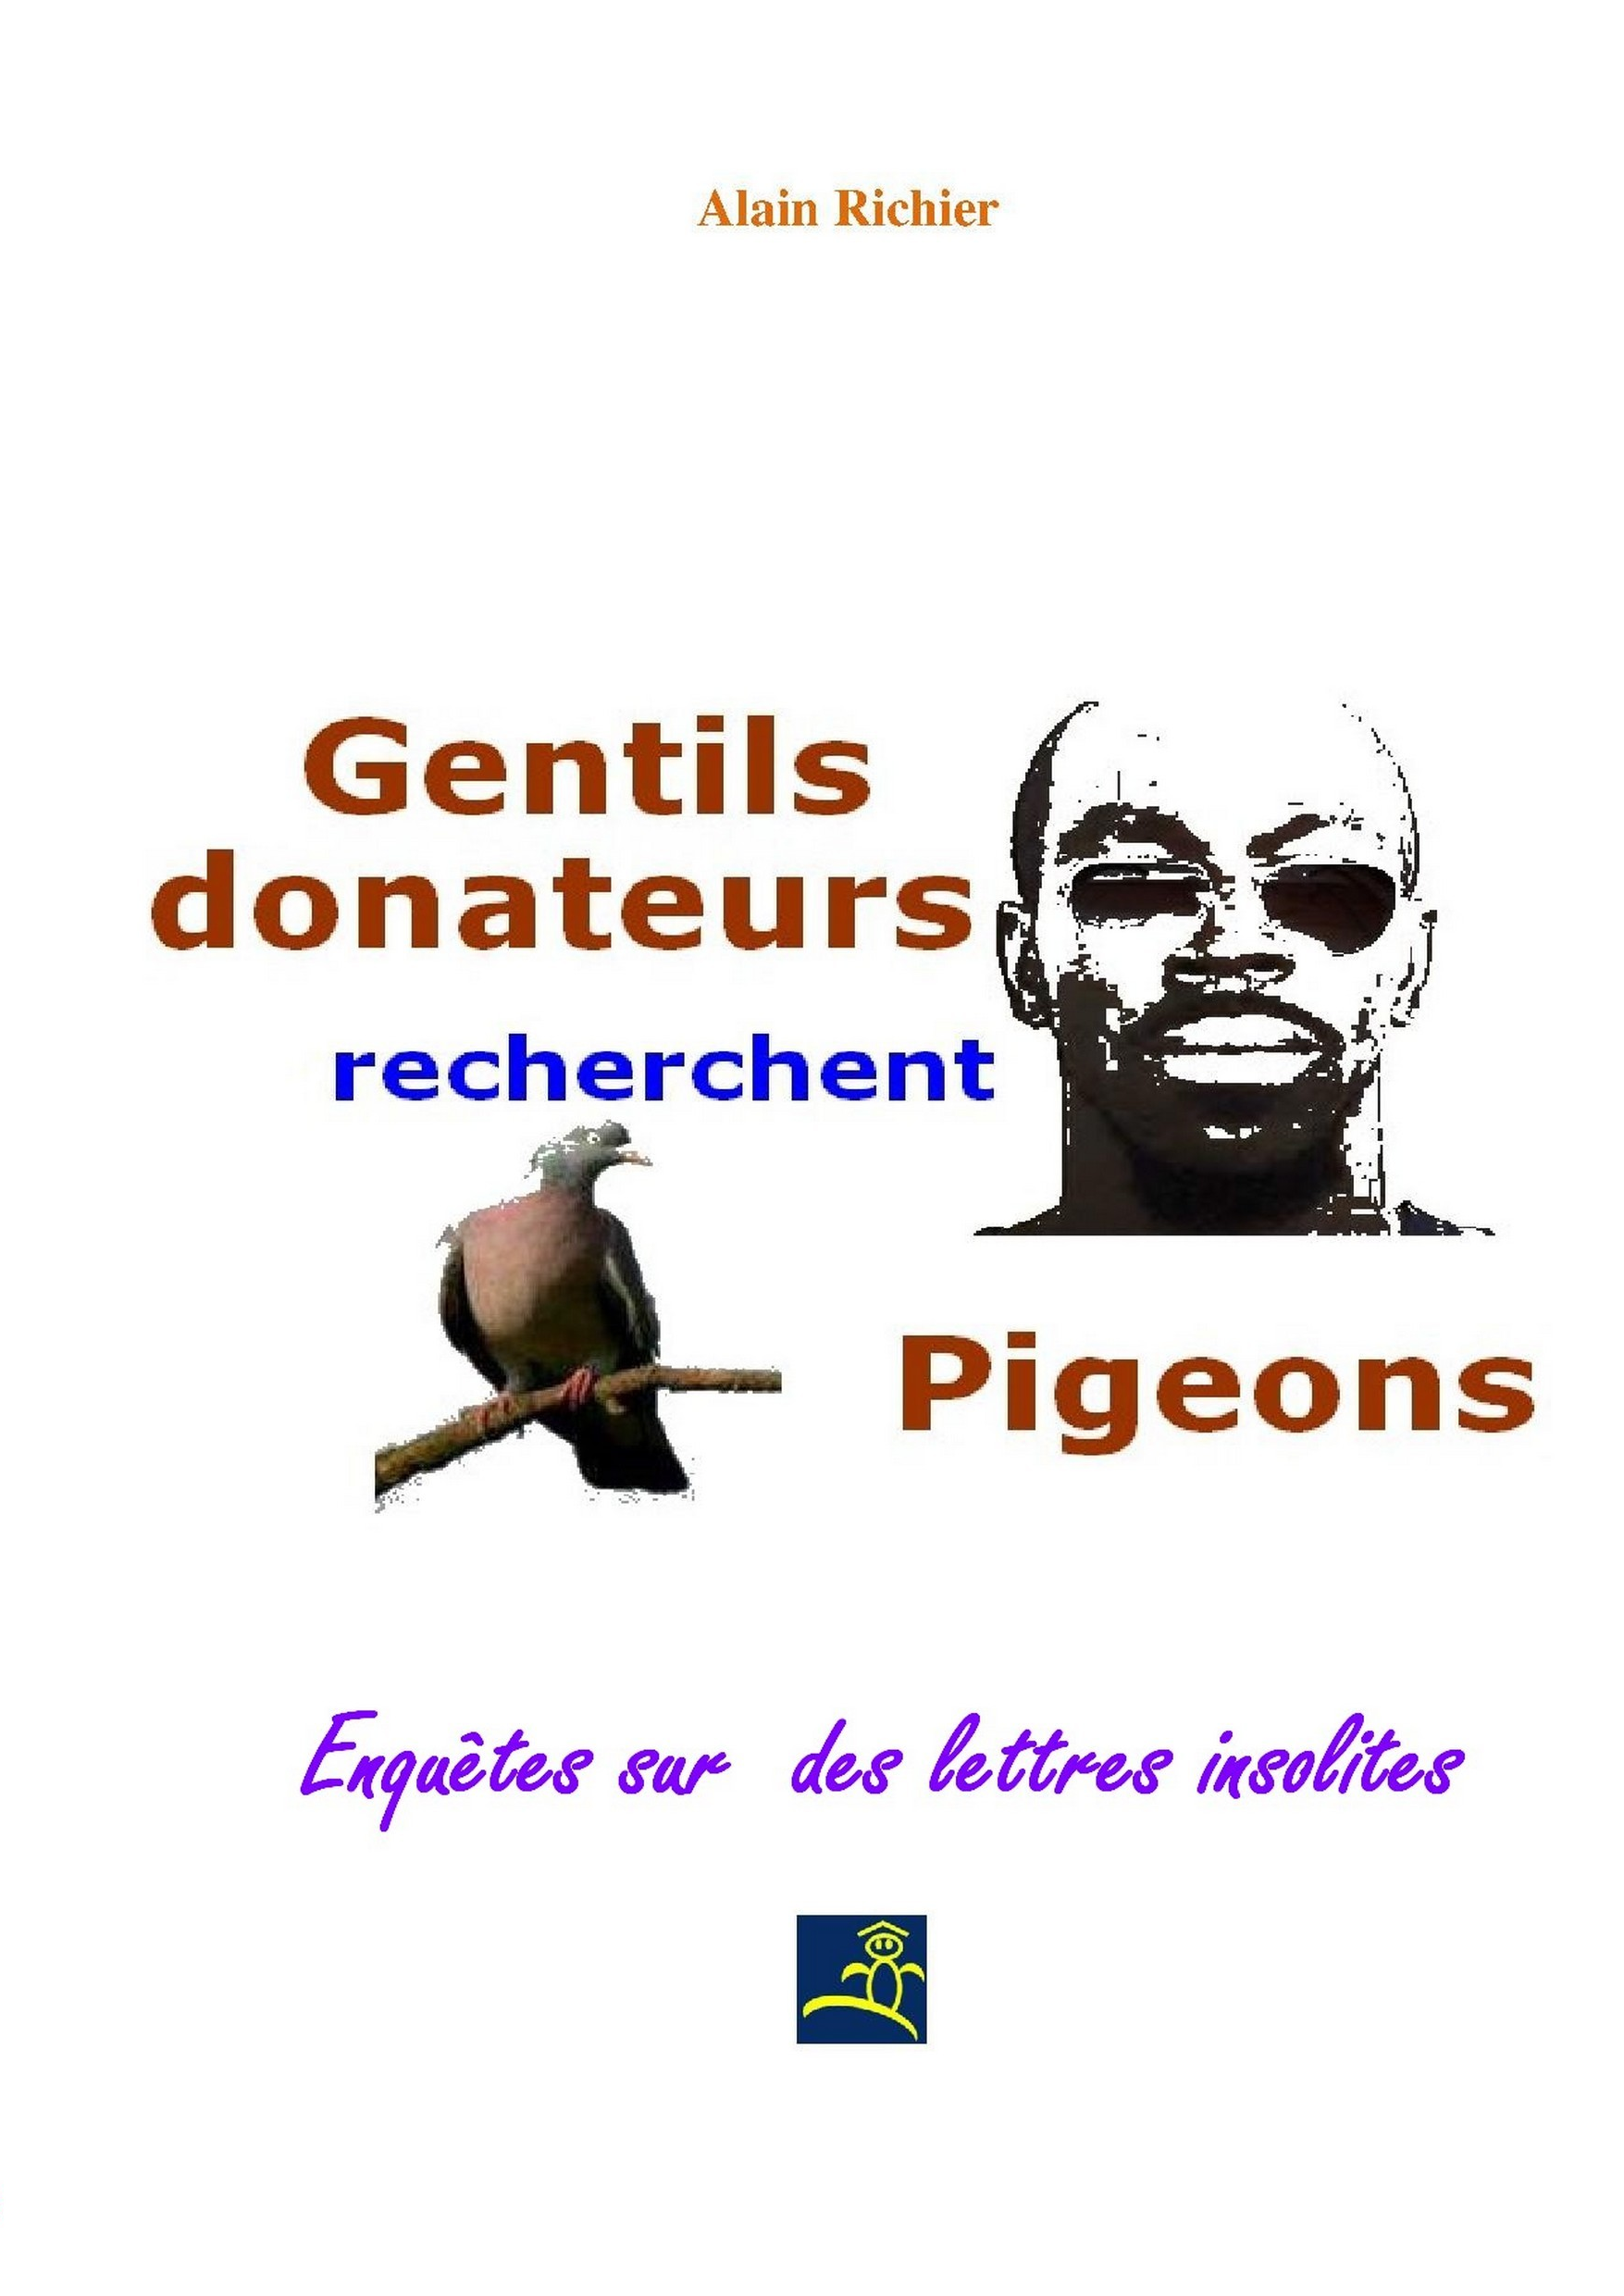 Gentils donateurs recherchent pigeons